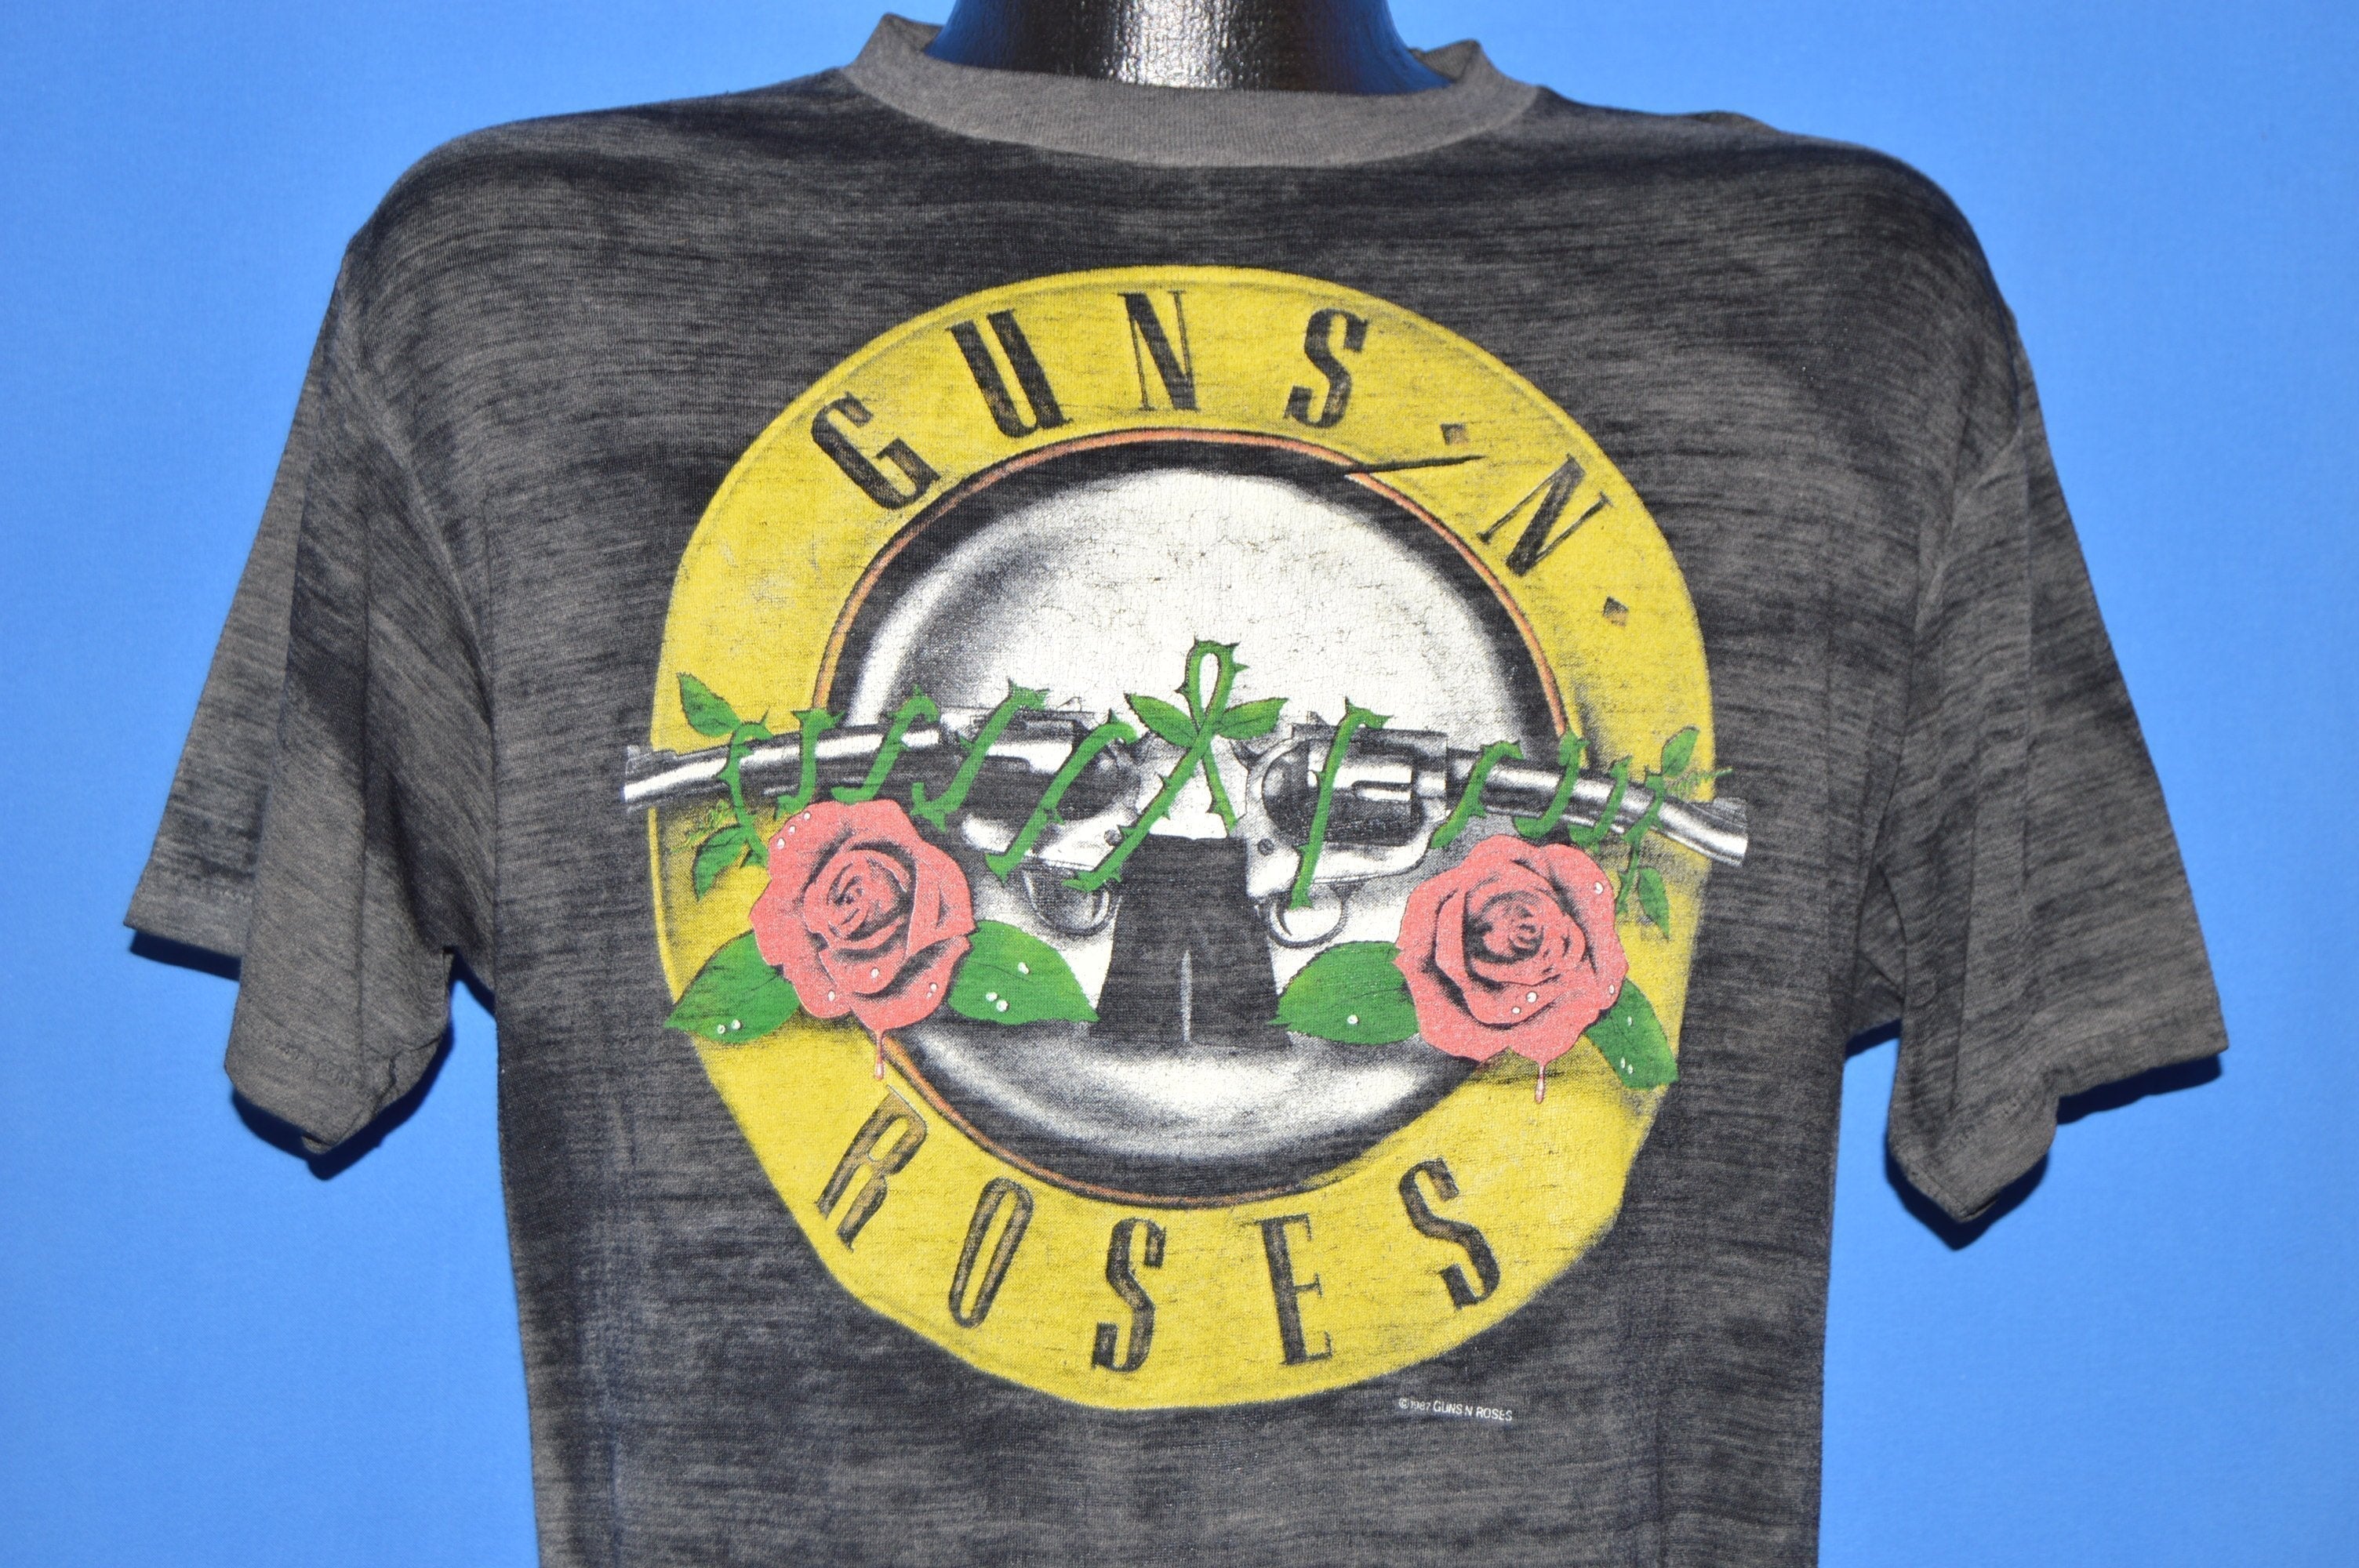 Guns N' Roses Appetite for Destruction 80s Rock T-shirt